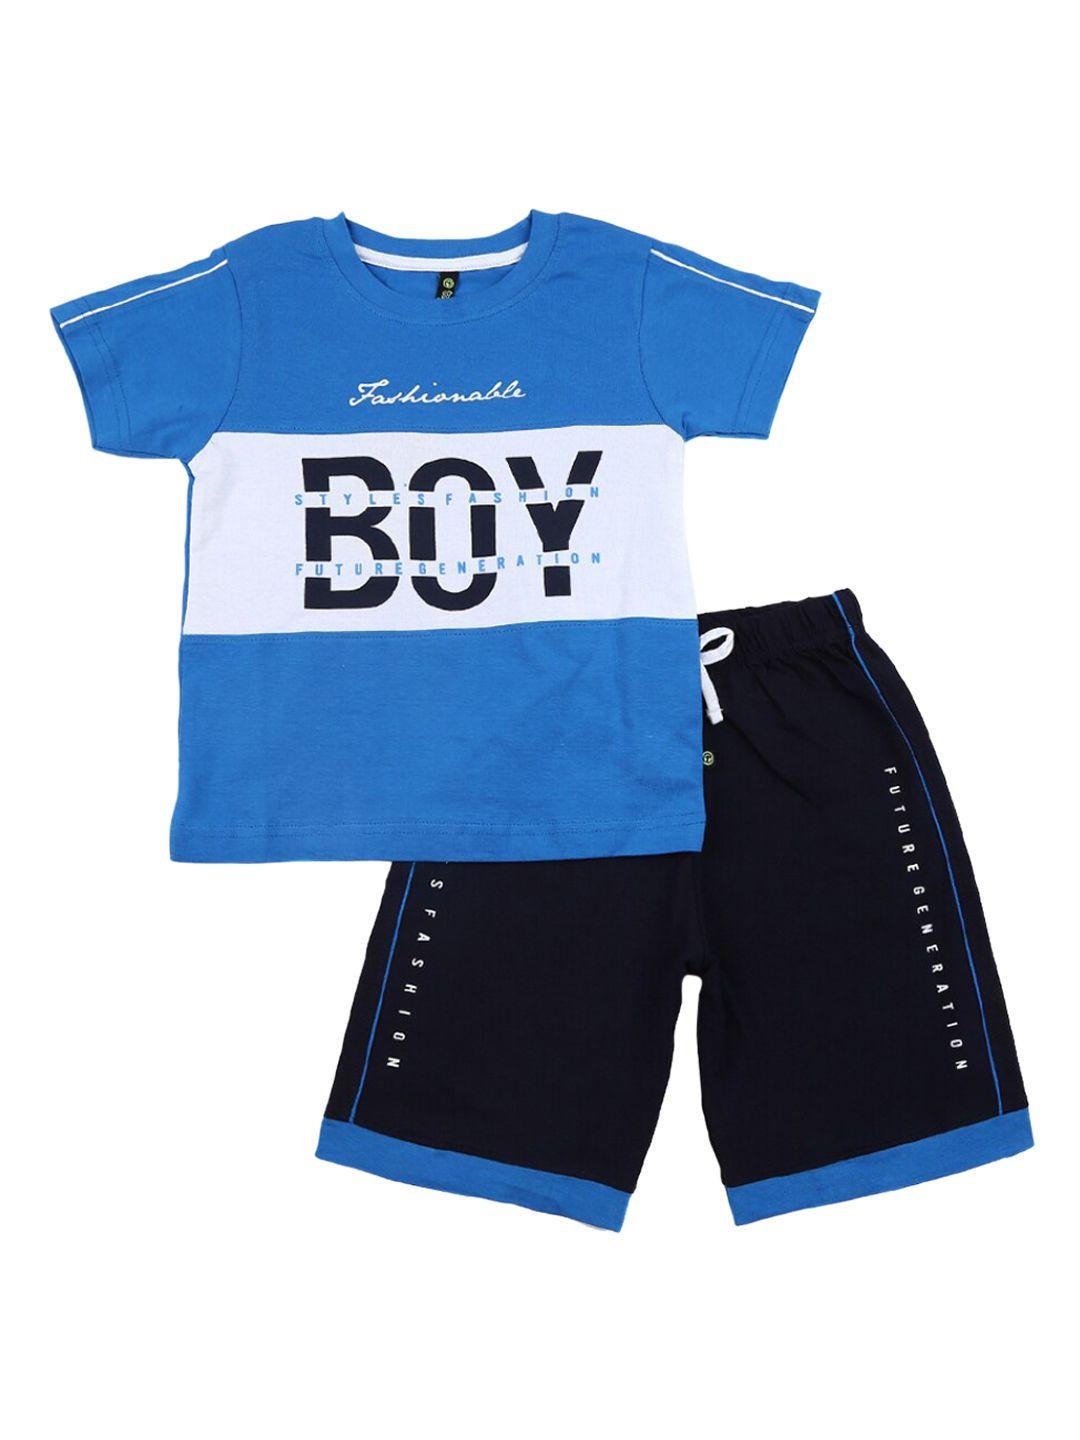 v-mart-unisex-kids-blue-clothing-set